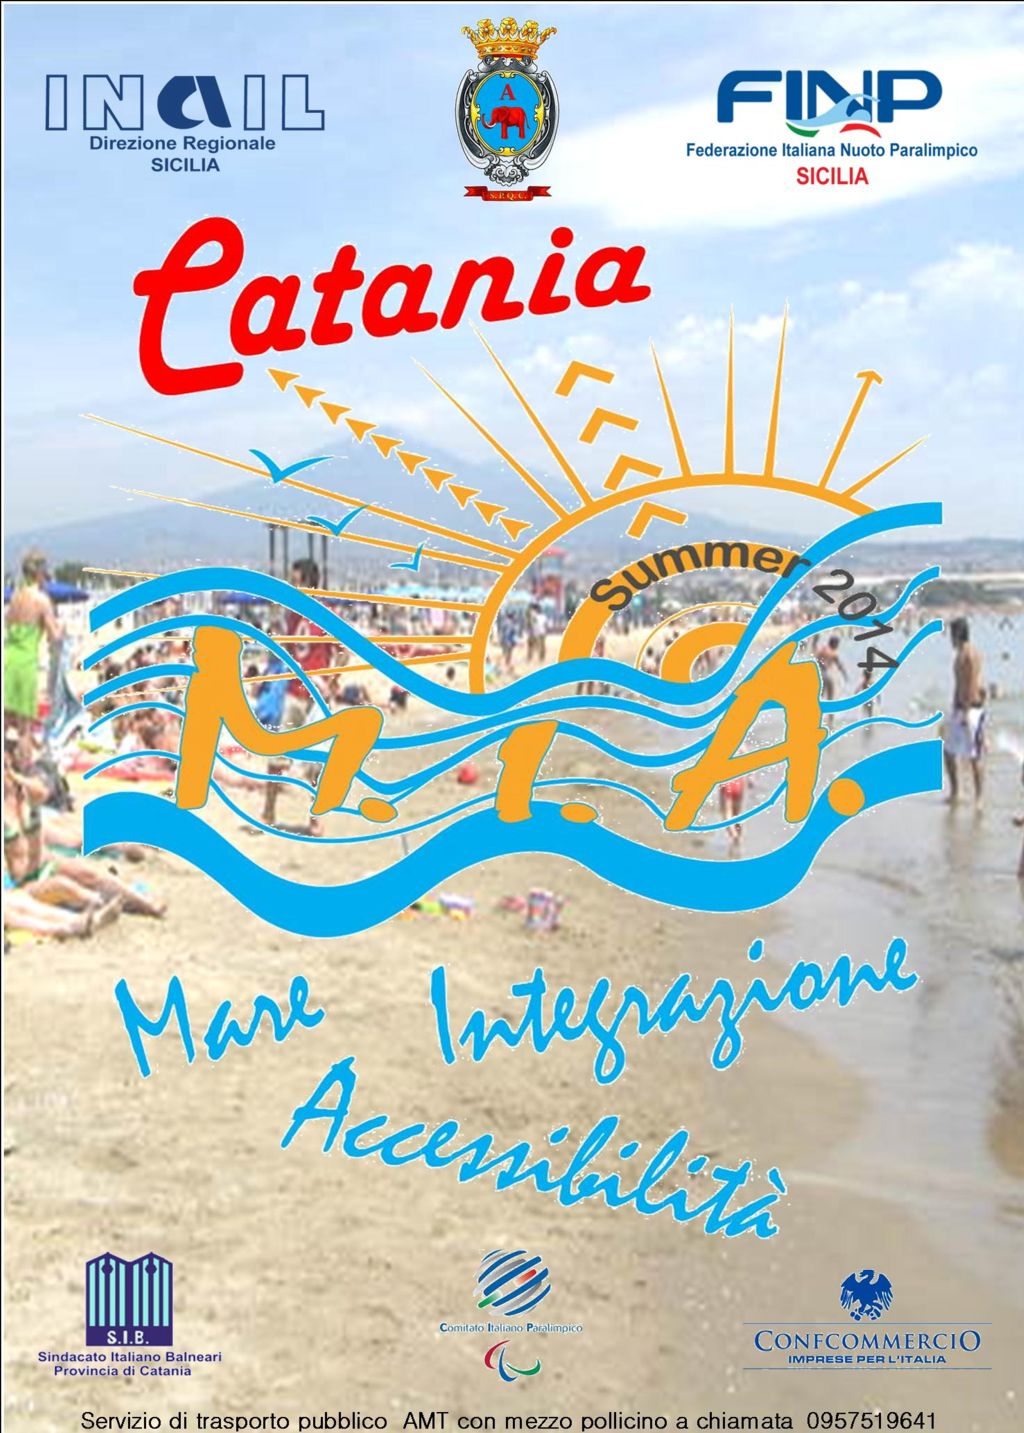  Catania M.I.A. mare,integrazione, accessibilità - il SIB a sostegno dei disabili